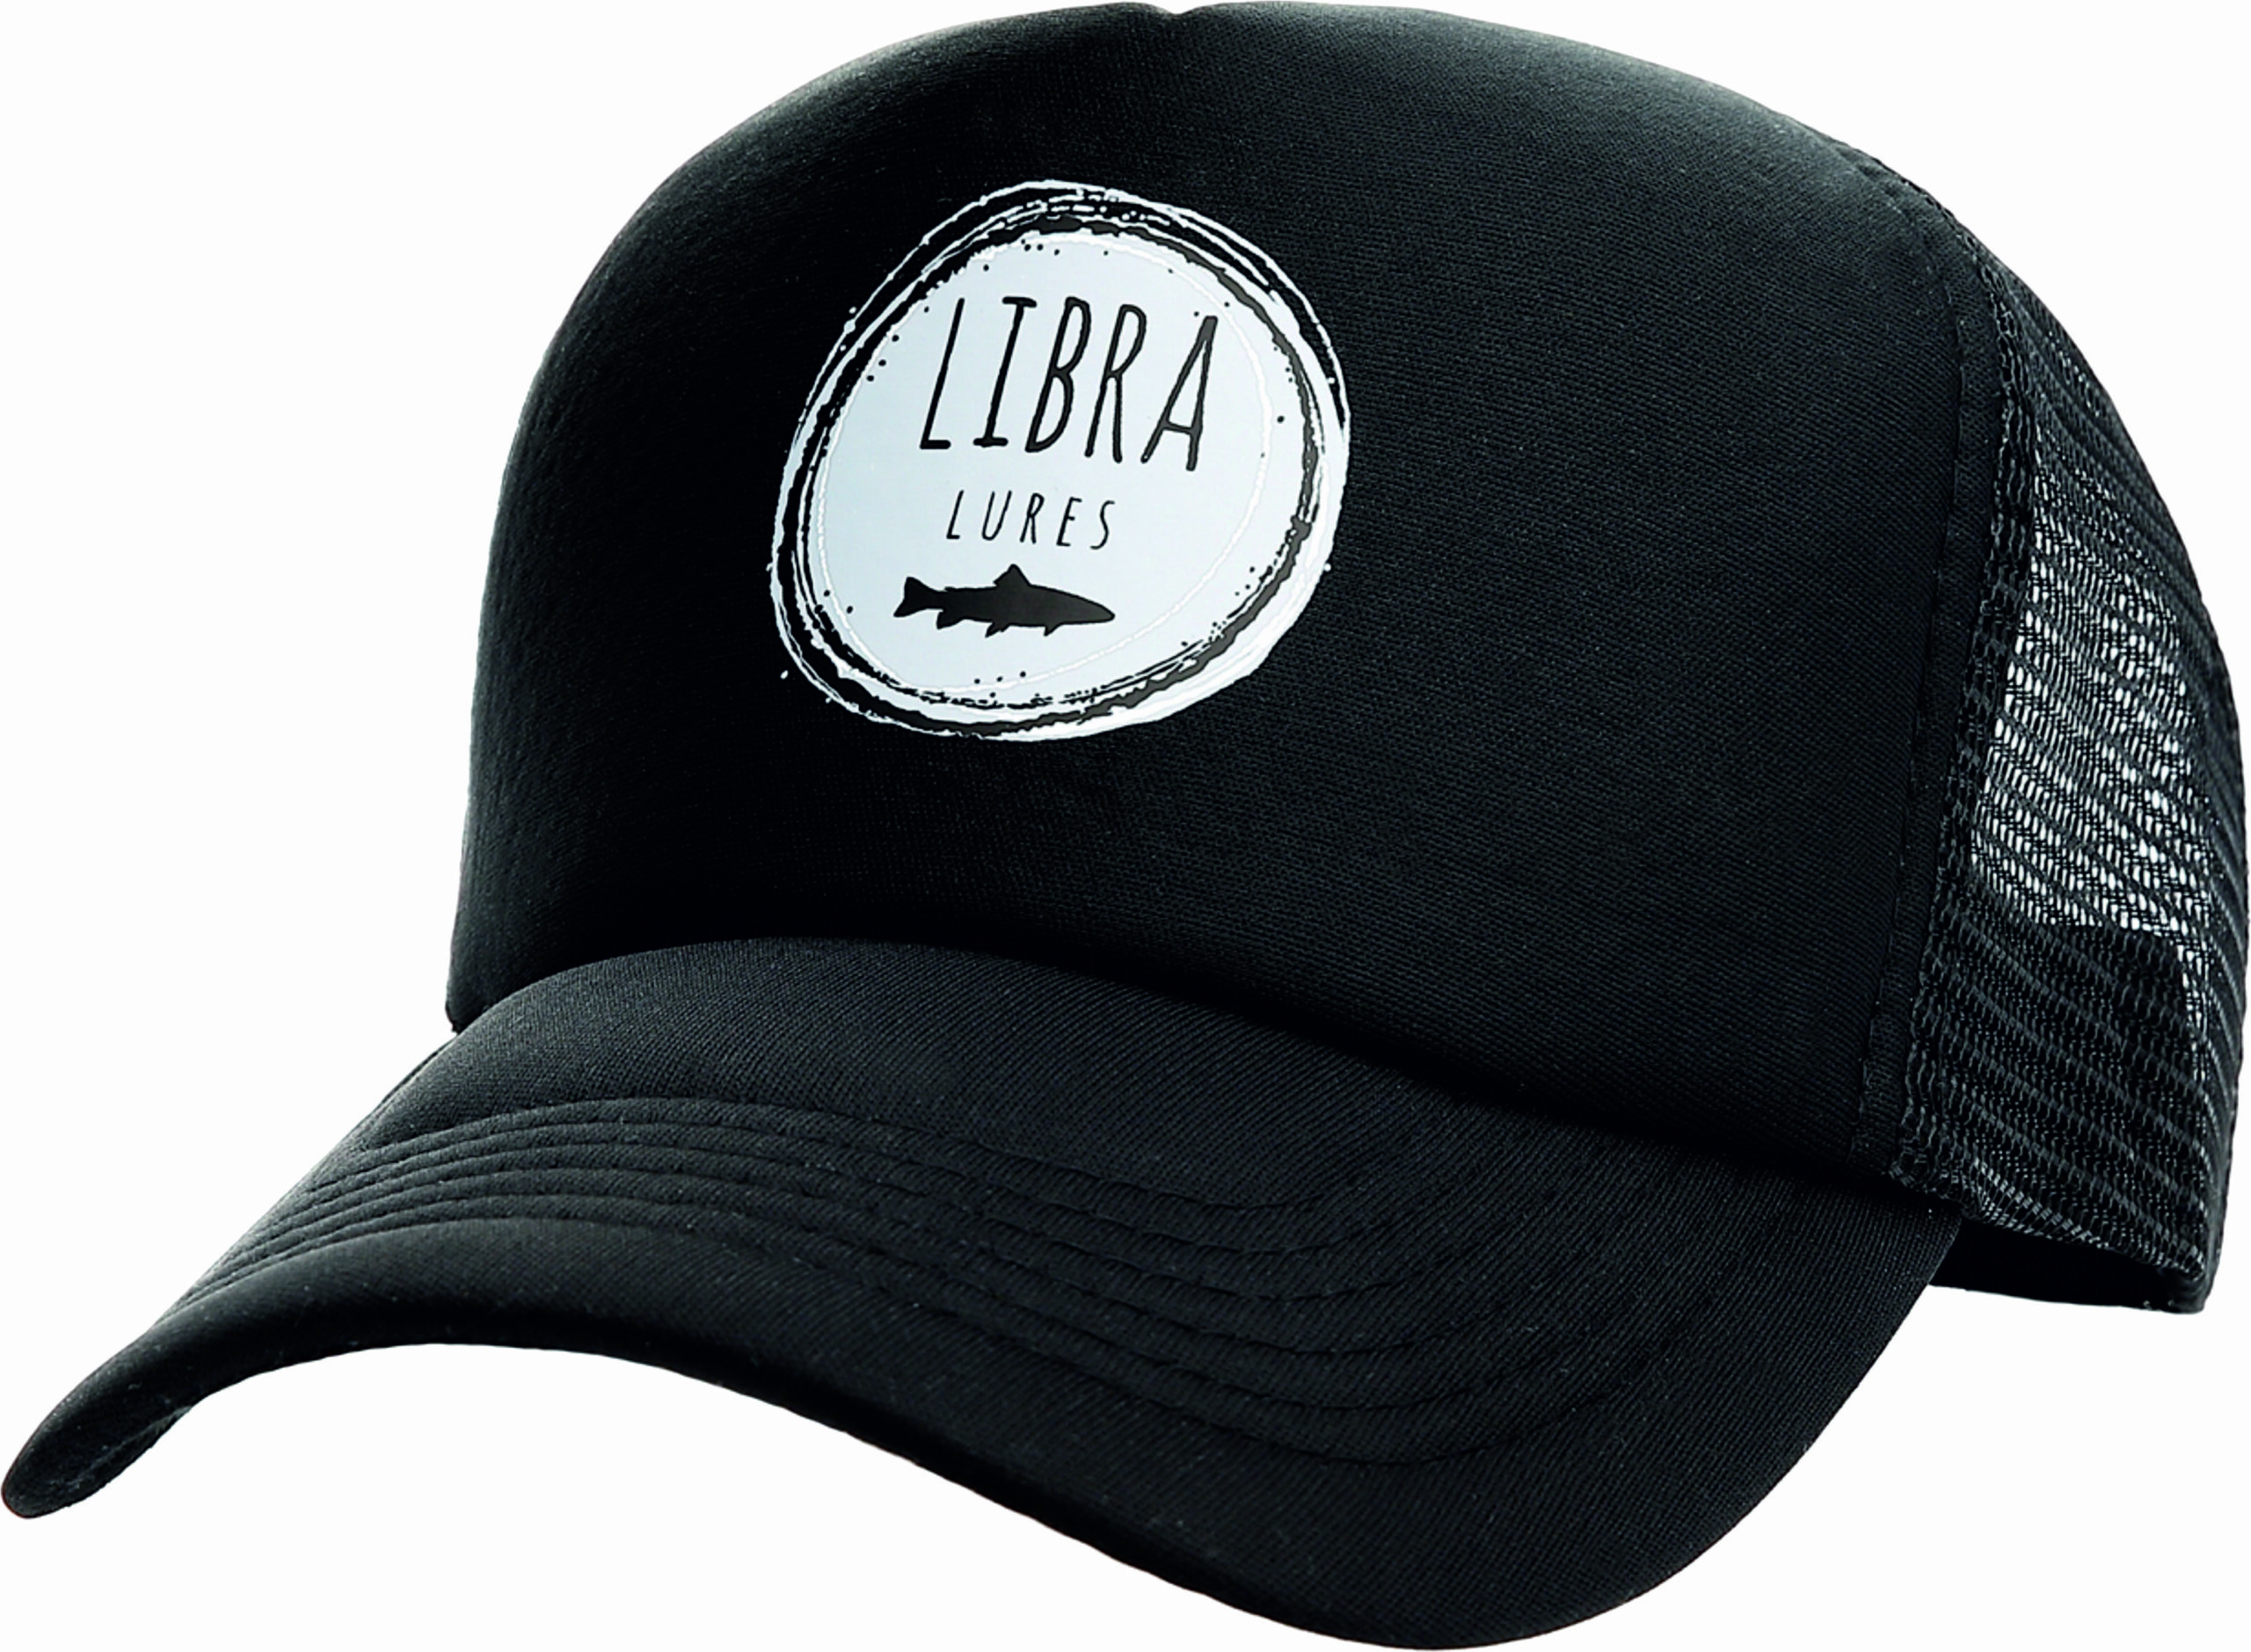 Libra Lures odziez czapka z daszkiem typu trucker